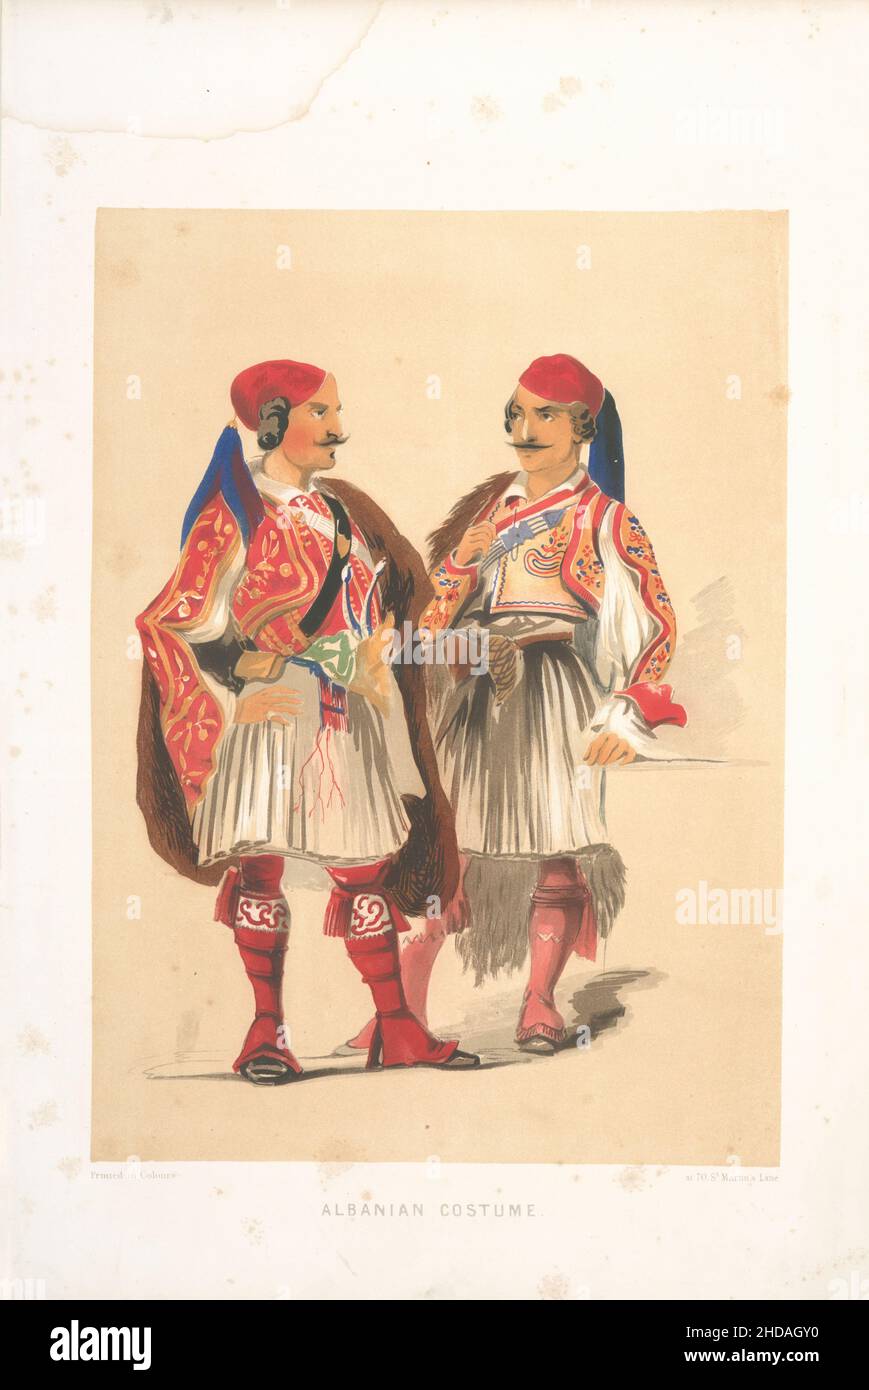 Lithographie de couleur vintage de l'Empire ottoman: Costume albanais 1854, par Forbes Mac Bean (artiste) et Justin Sutcliffe (lithographe) Banque D'Images